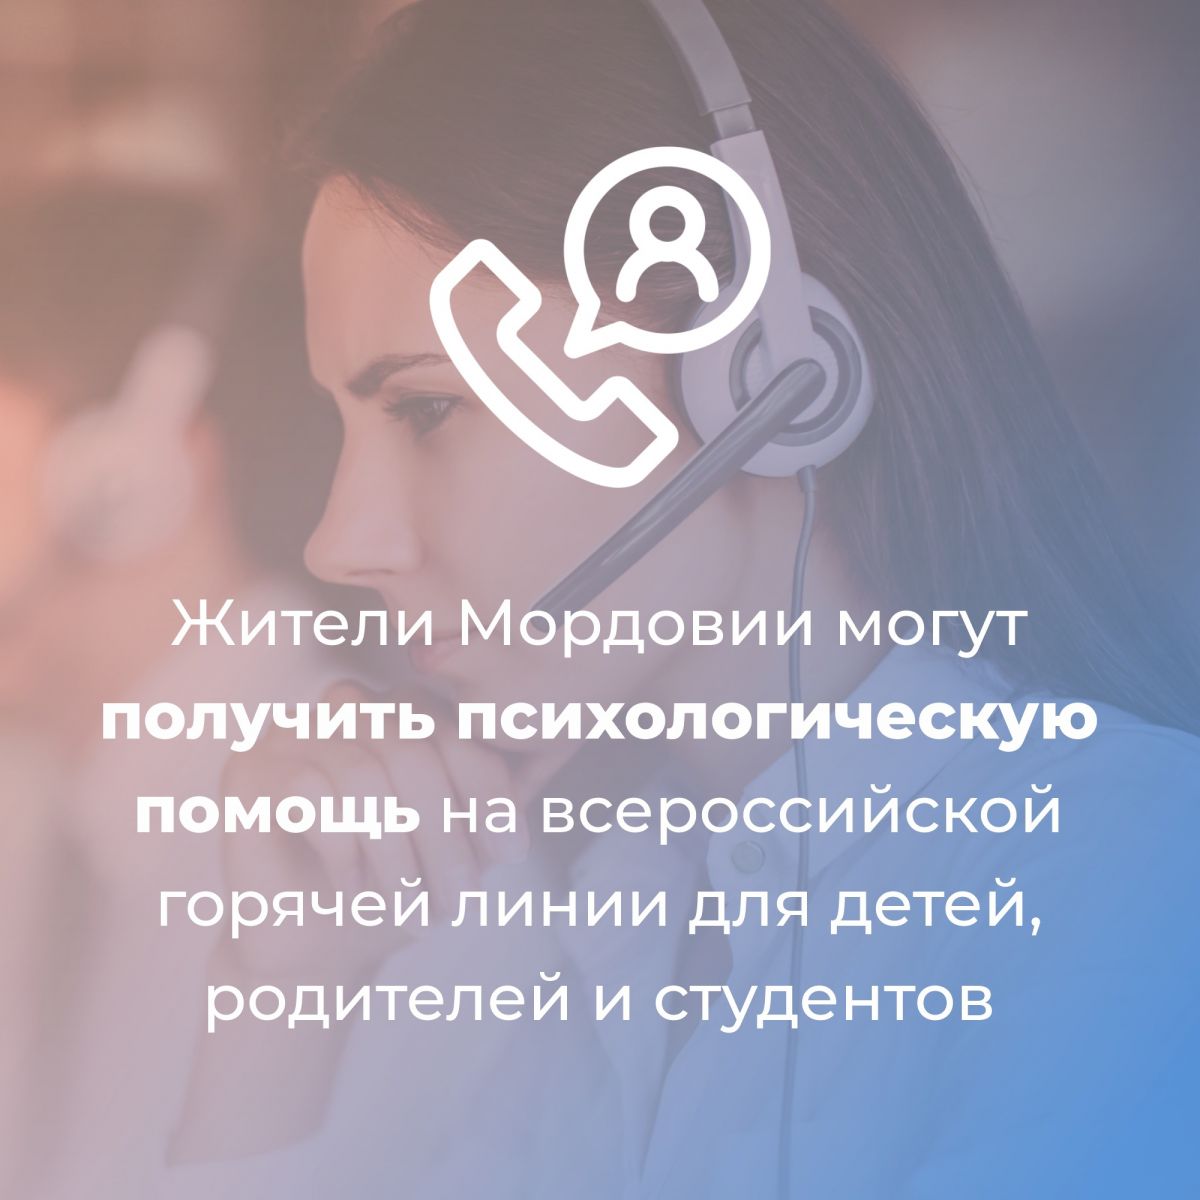 Жители Мордовии могут получить психологическую помощь на всероссийской горячей линии для детей, родителей и студентов